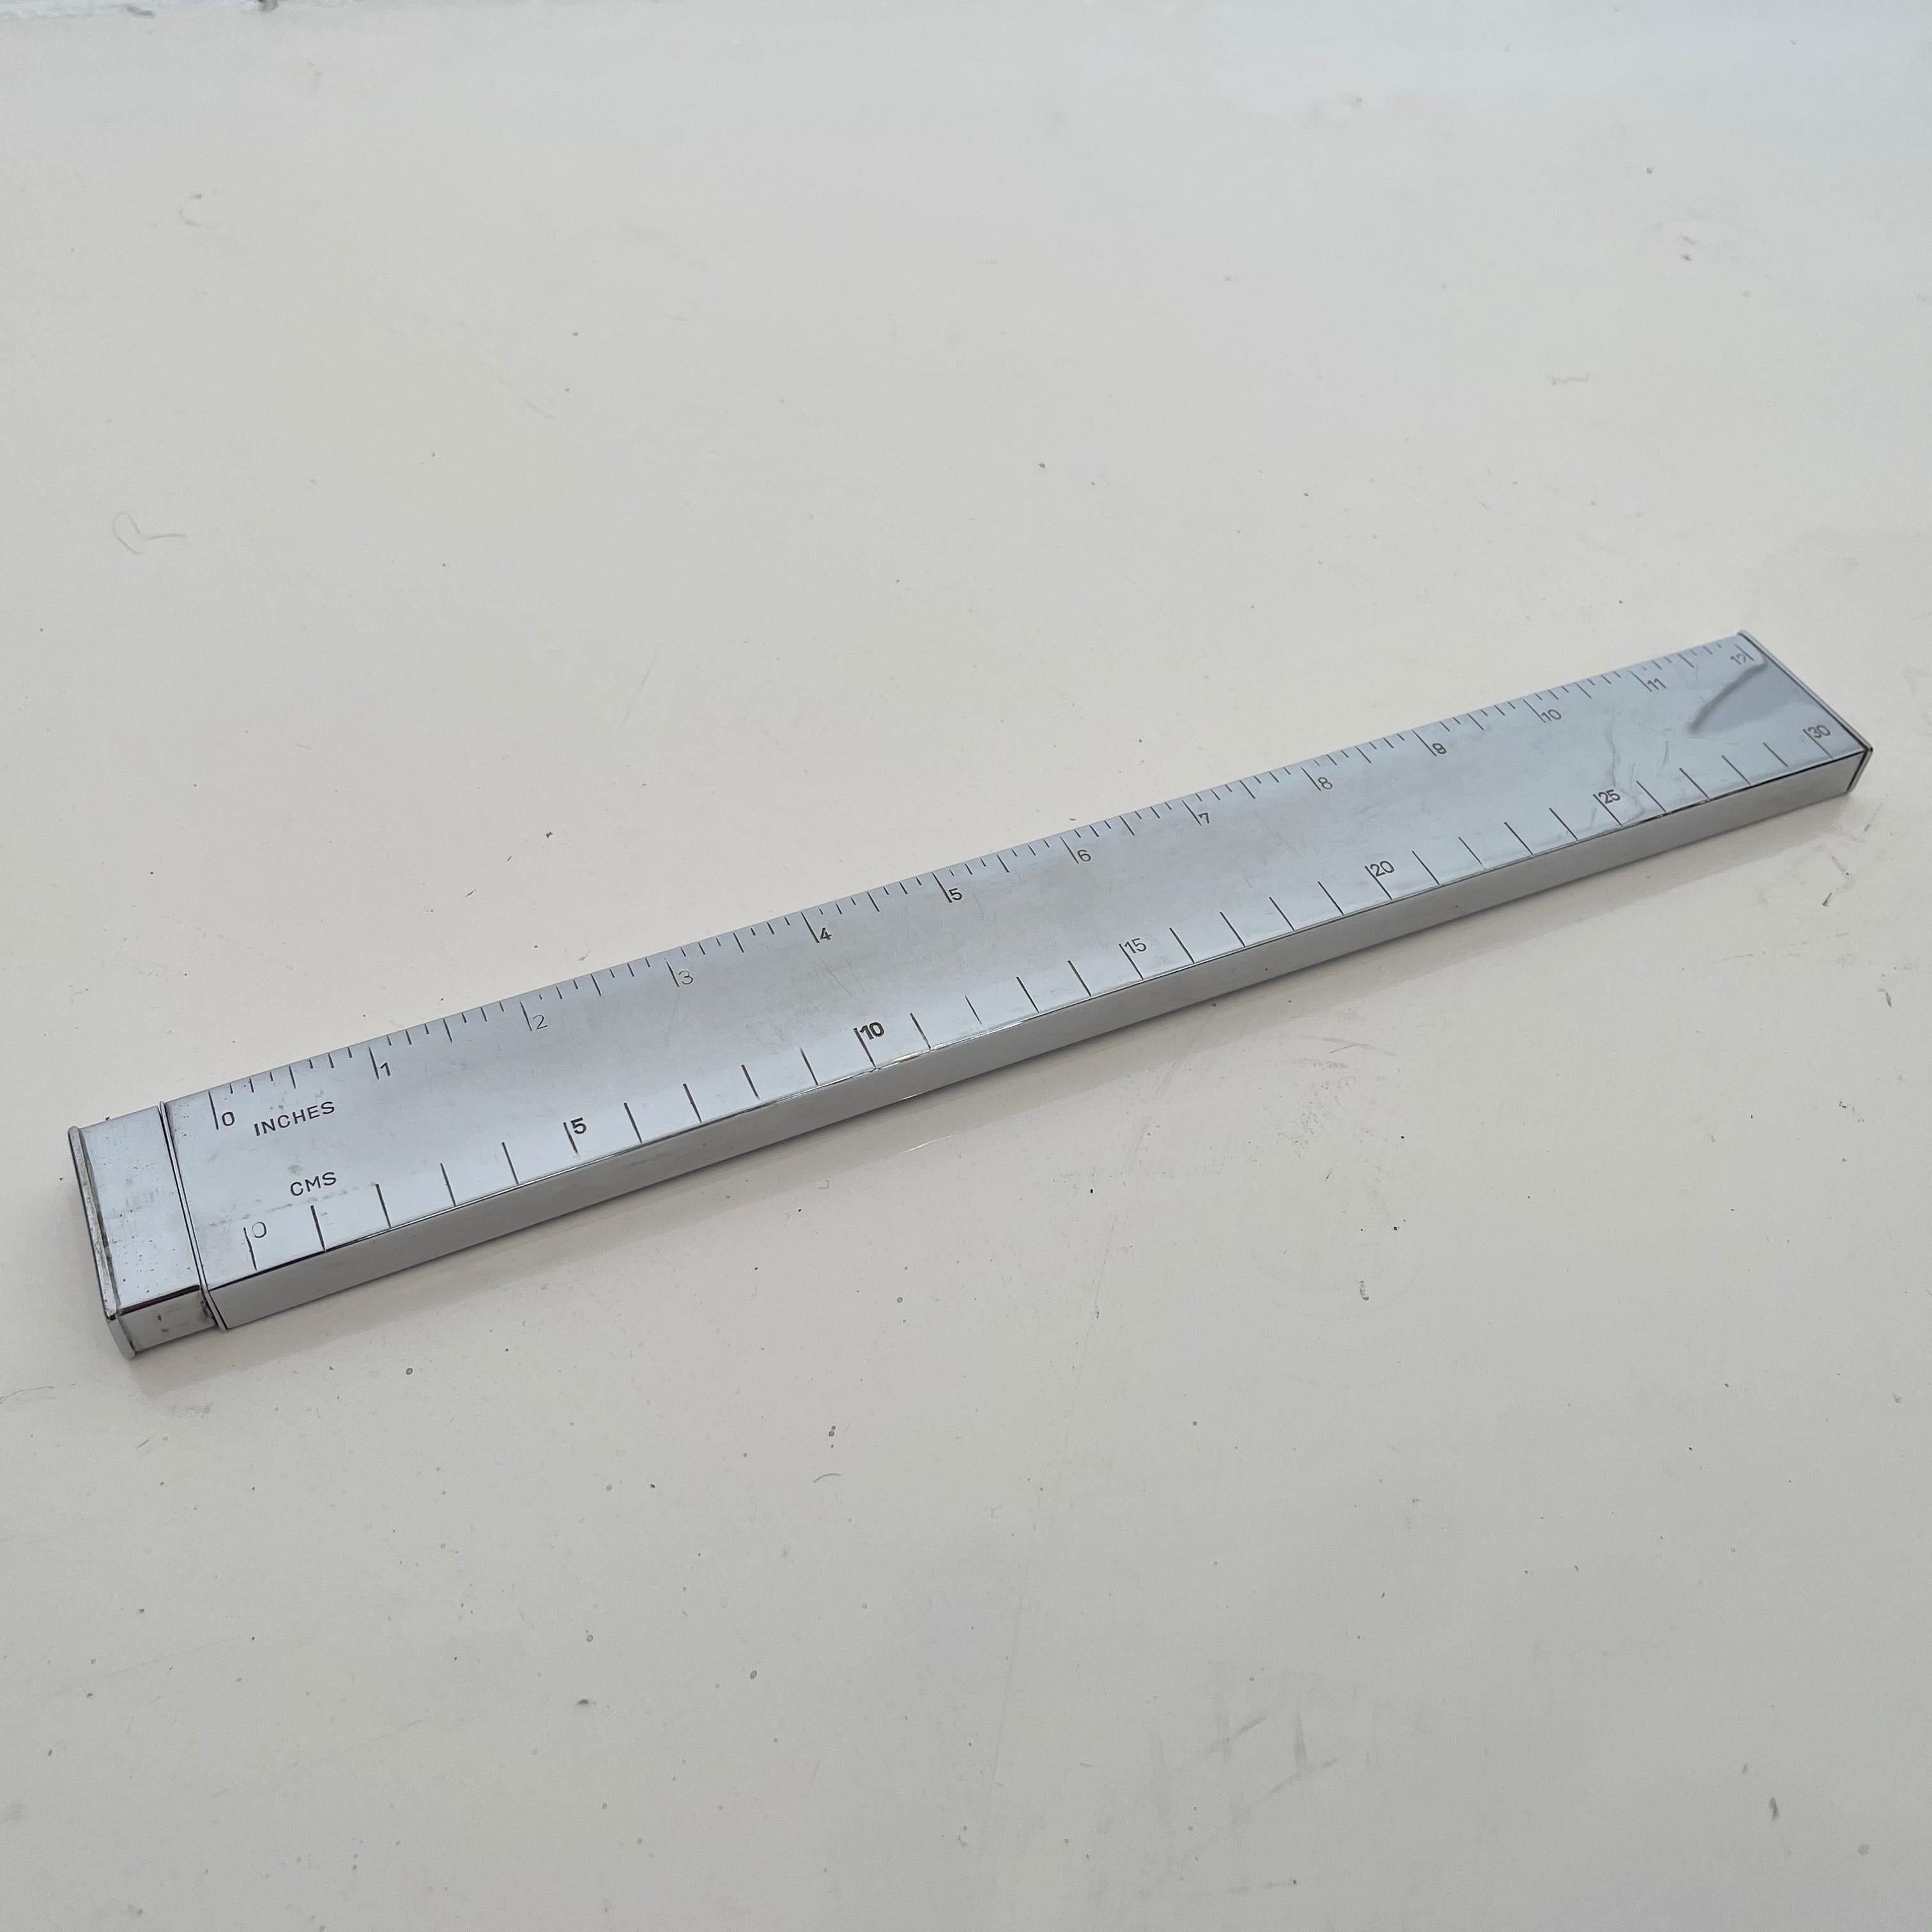 1 foot ruler